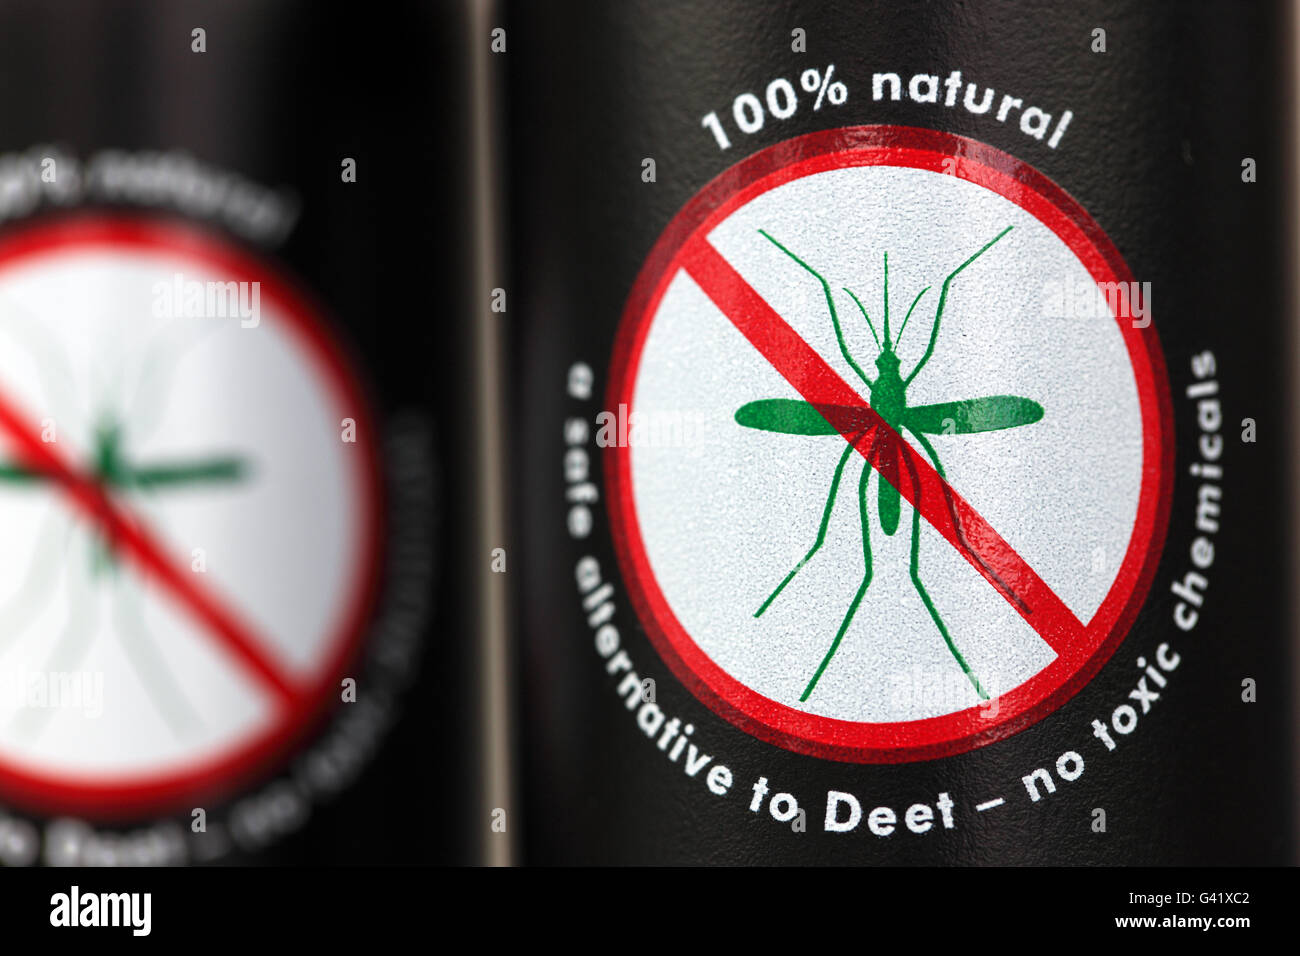 Un repellente per le zanzare che è naturale al cento per cento e senza sostanze chimiche tossiche Foto Stock